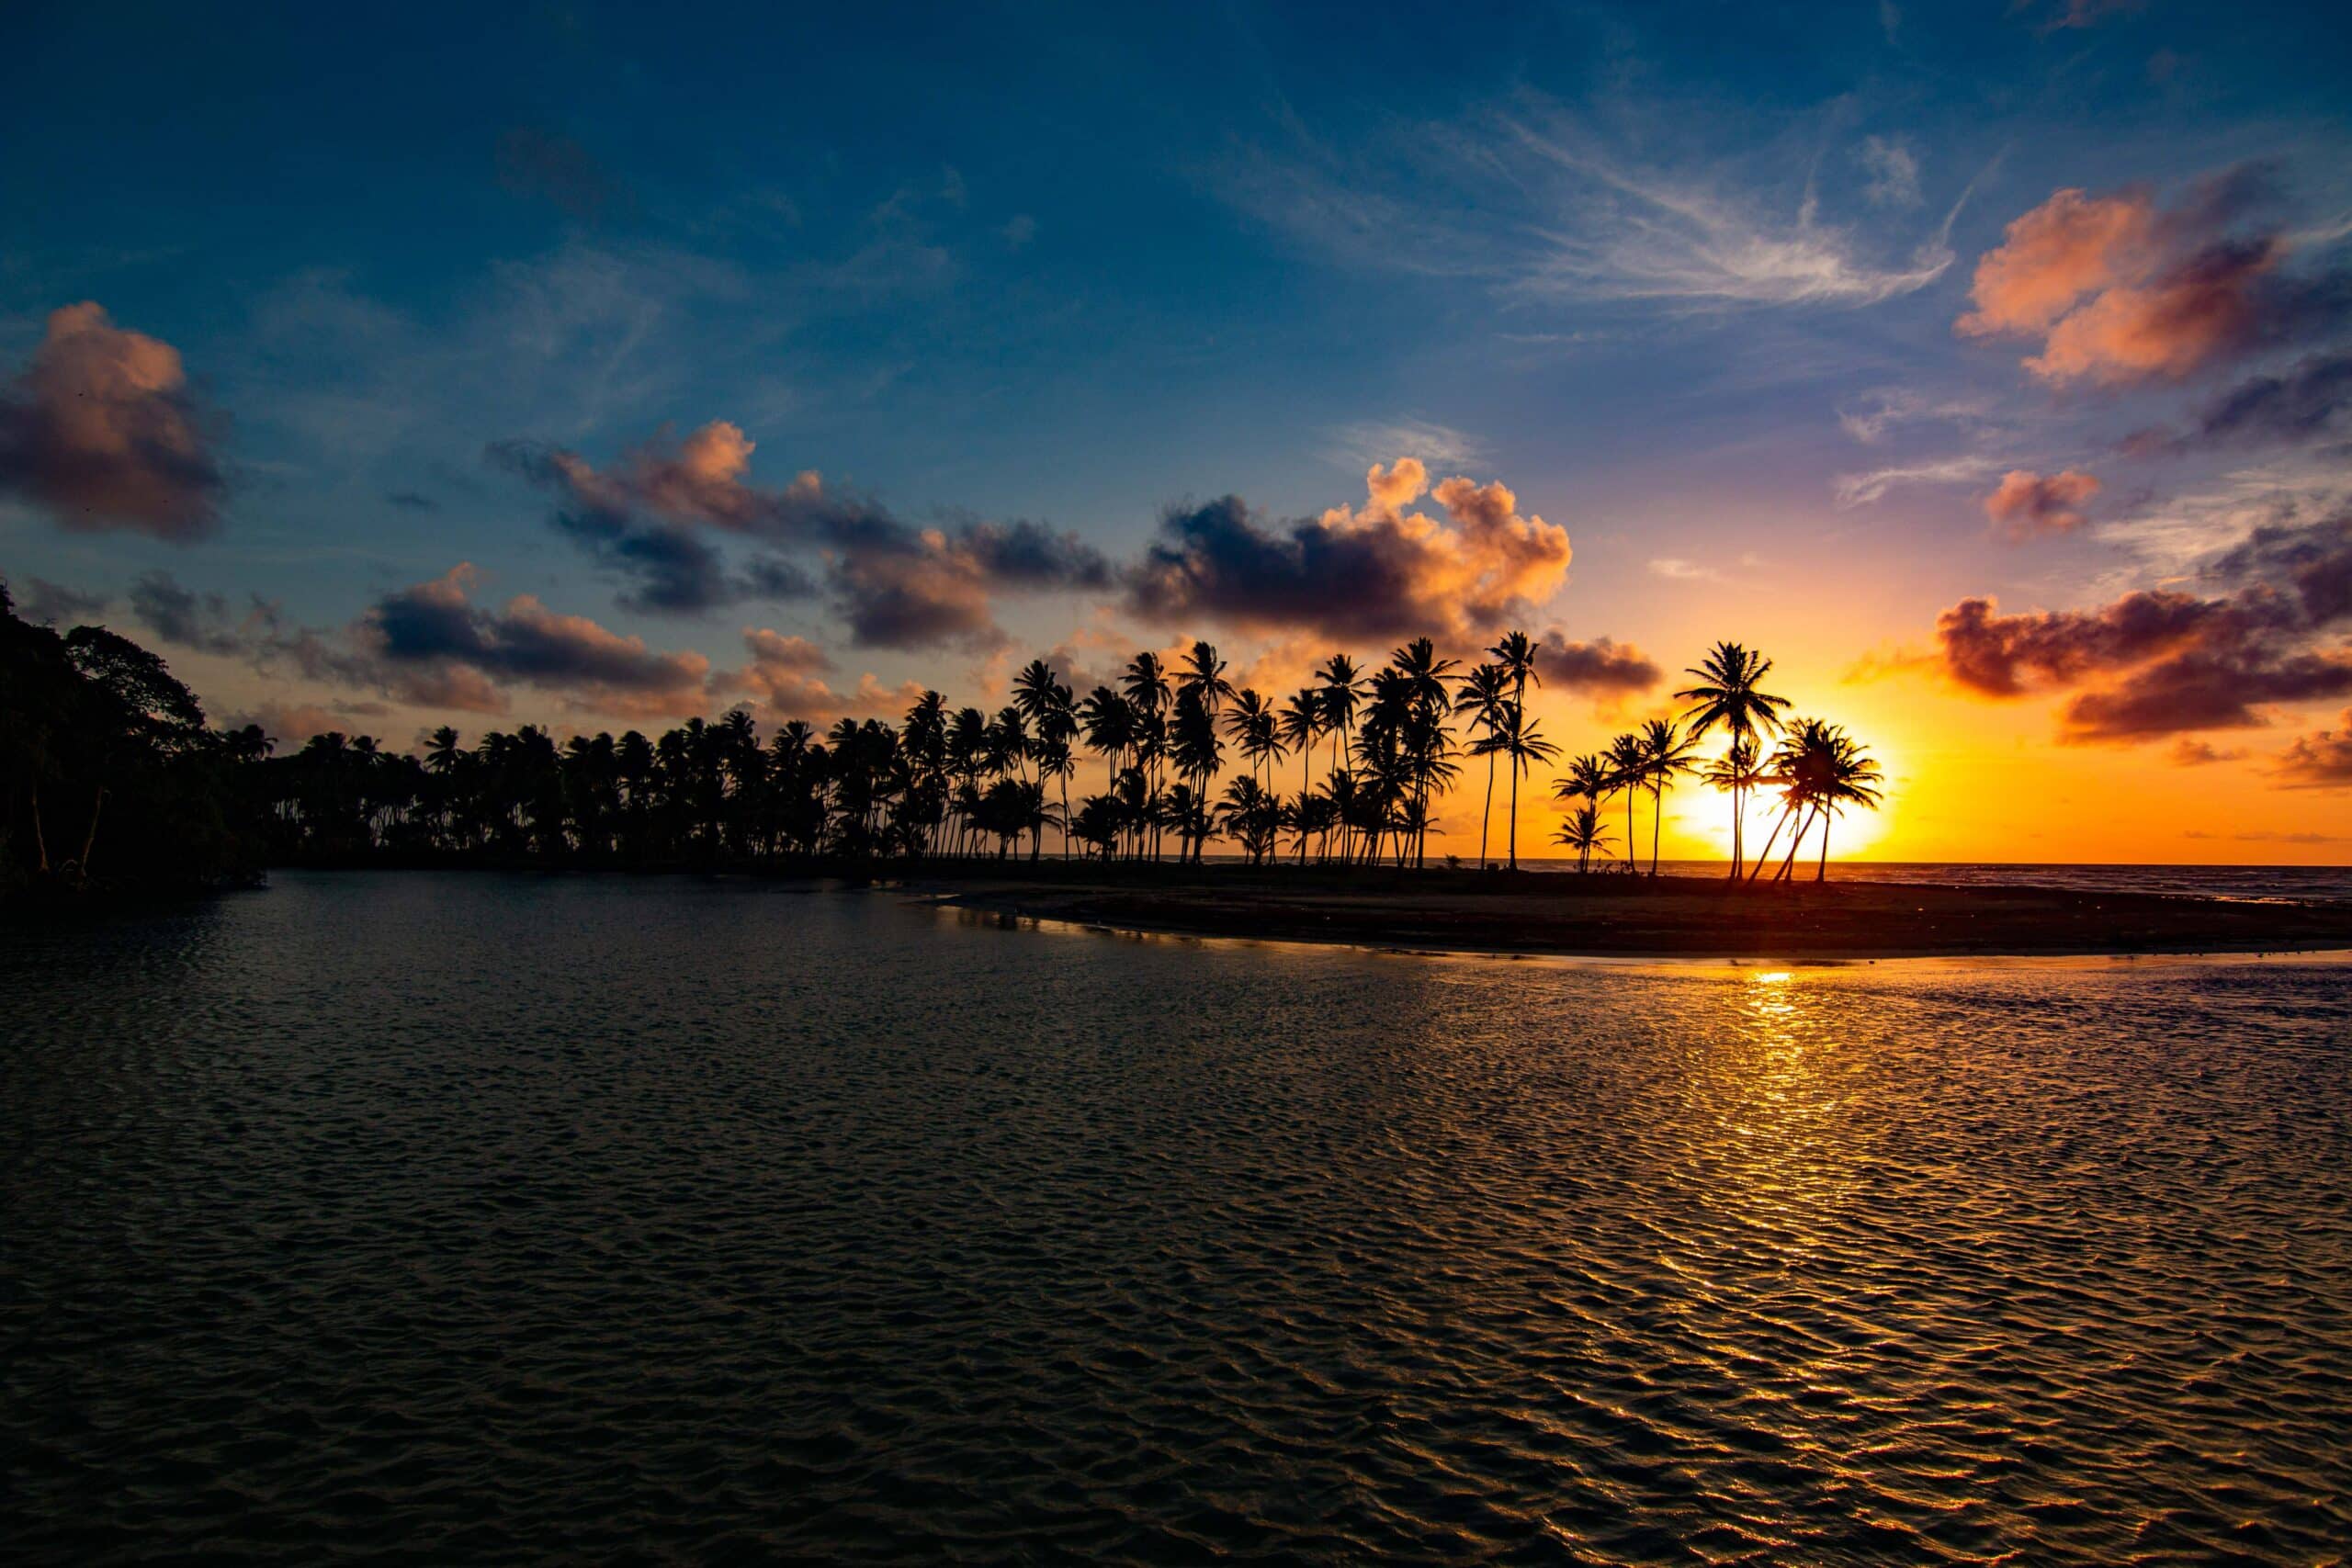 Vista do por-do-sol na Praia Manzanilla, Trindade e Tobago - Representa seguro viagem Trindade e Tobago